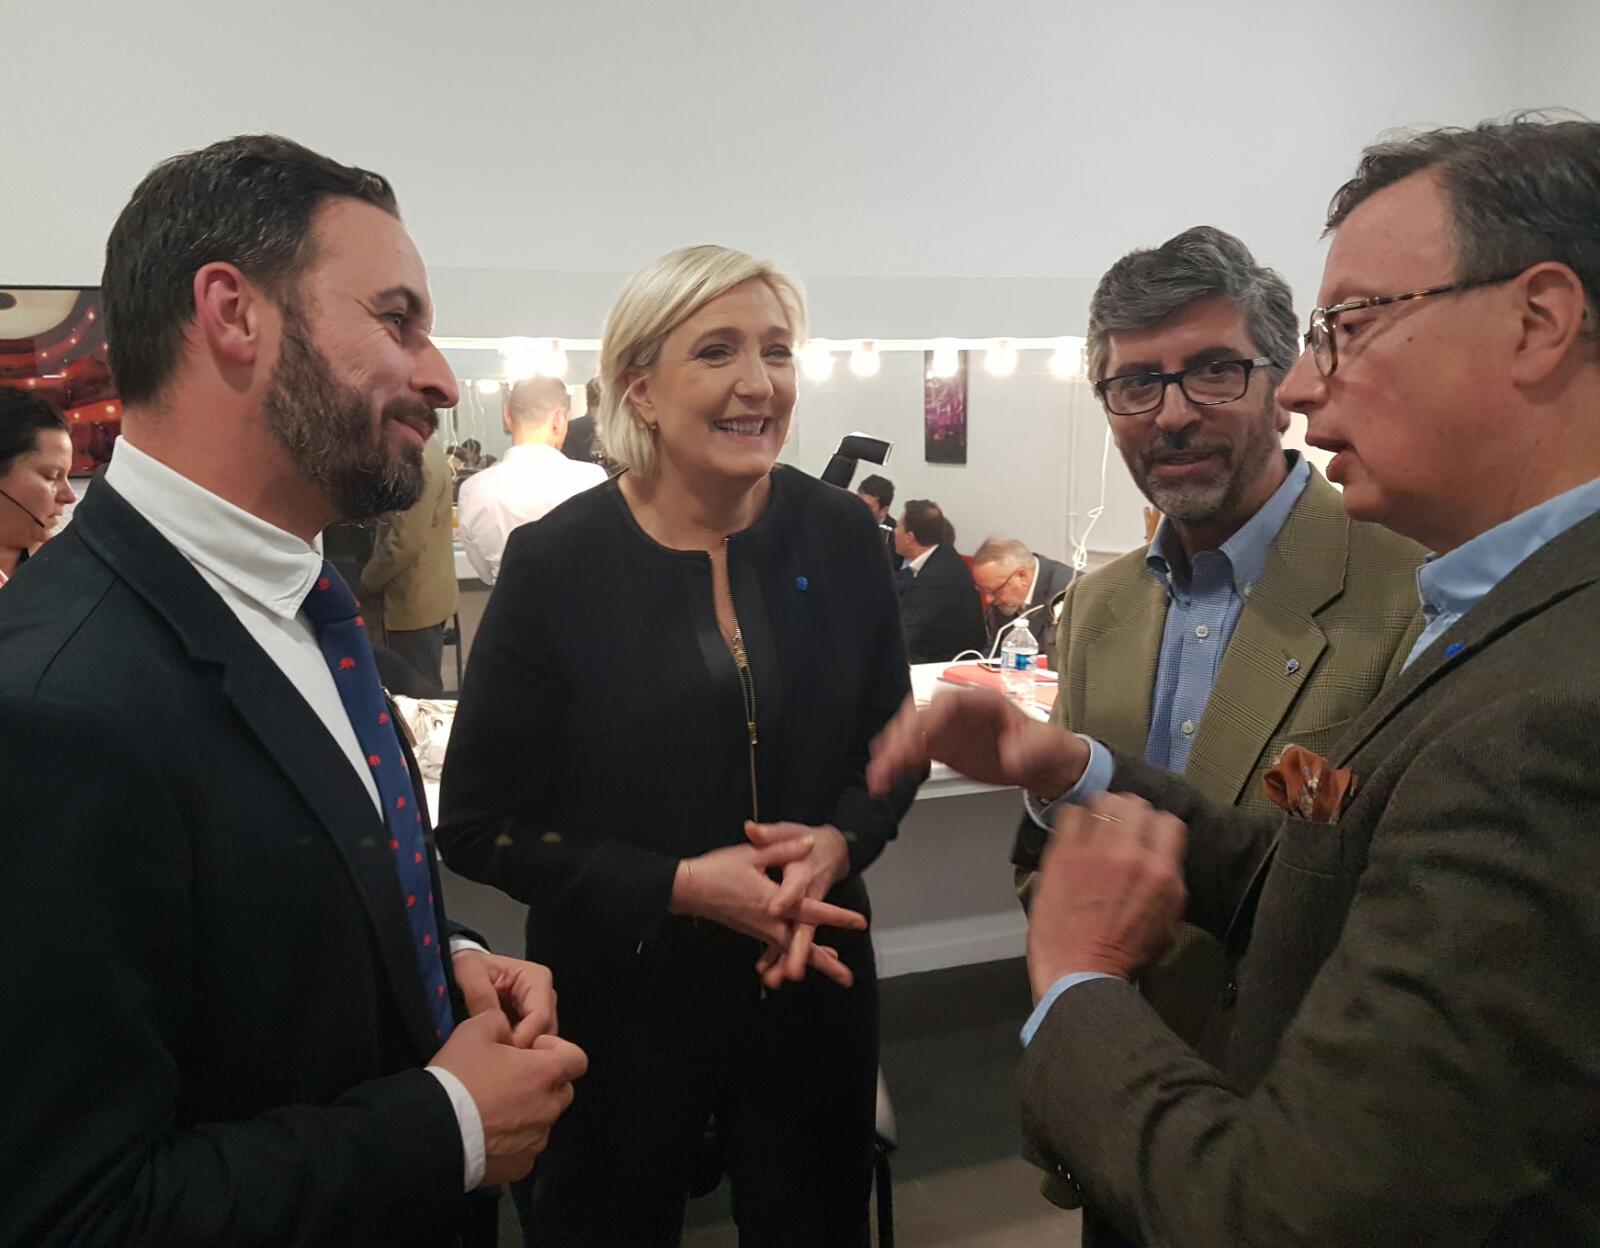 Le Pen felicita els seus “amics de Vox” pels pronòstics a Andalusia